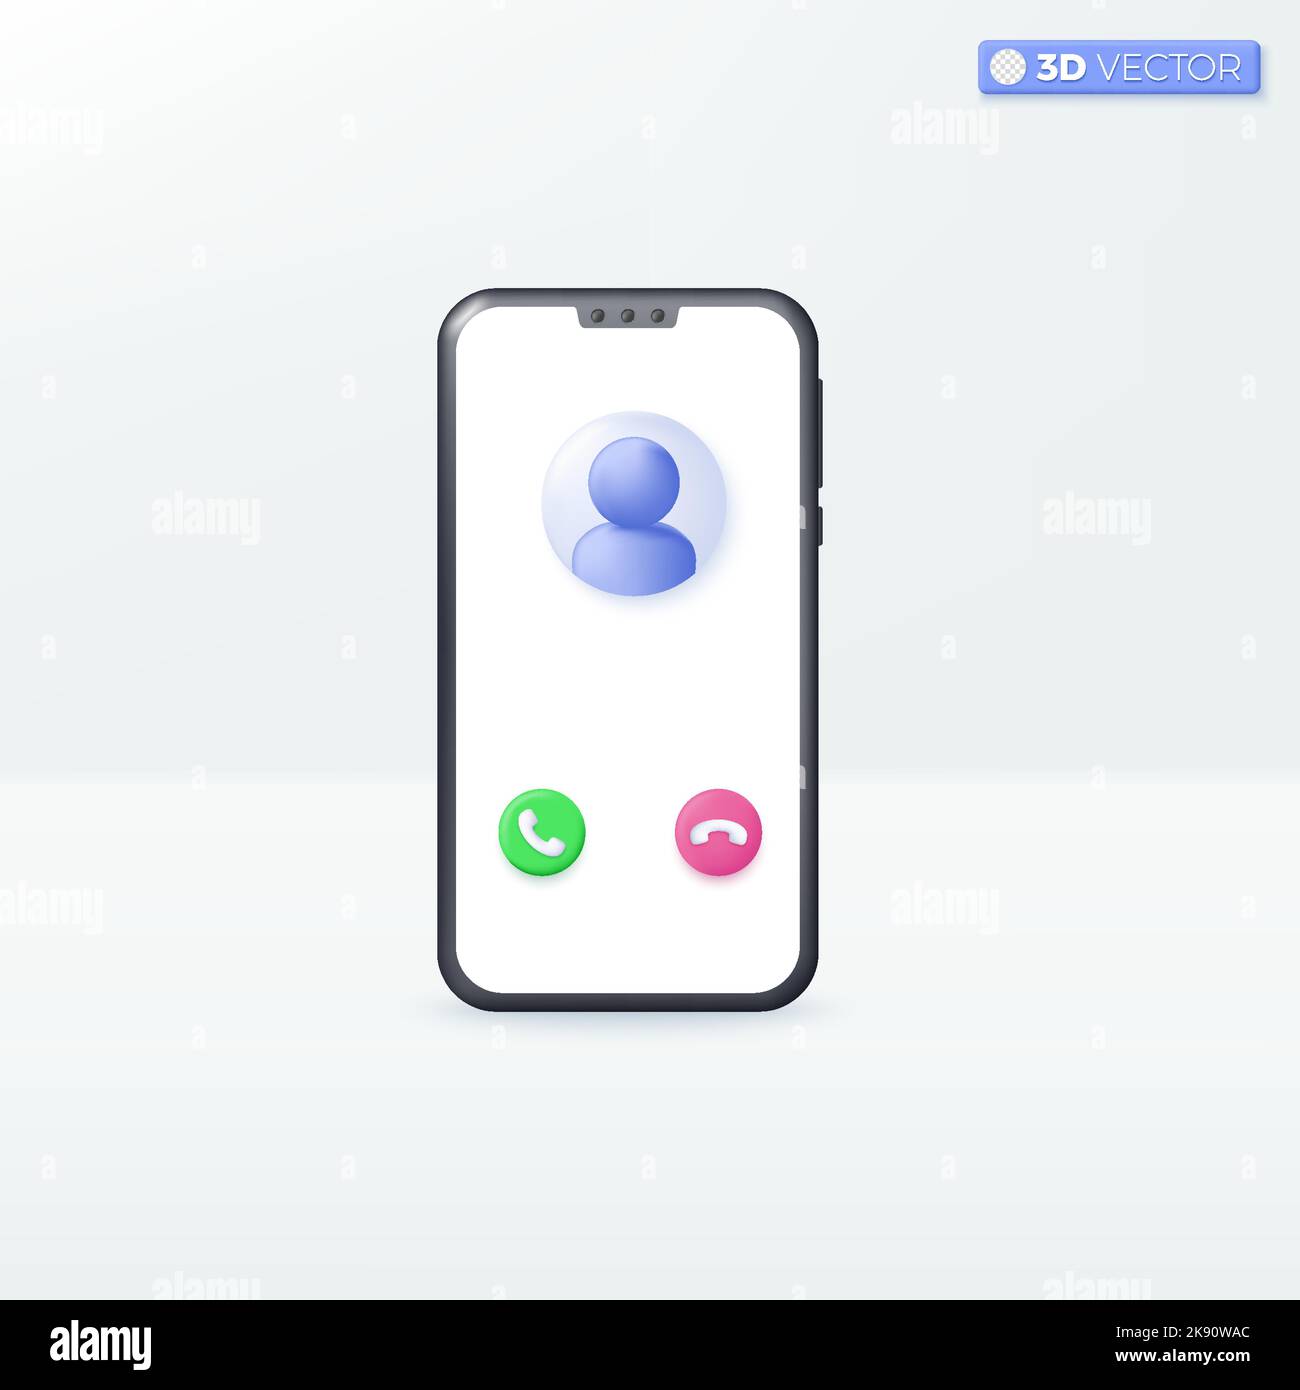 Boutons de réponse et de refus d'appel du smartphone symboles d'icône, concept d'appel et de déconnexion. 3D illustrations vectorielles isolées. Dessin animé pastel minimal Illustration de Vecteur